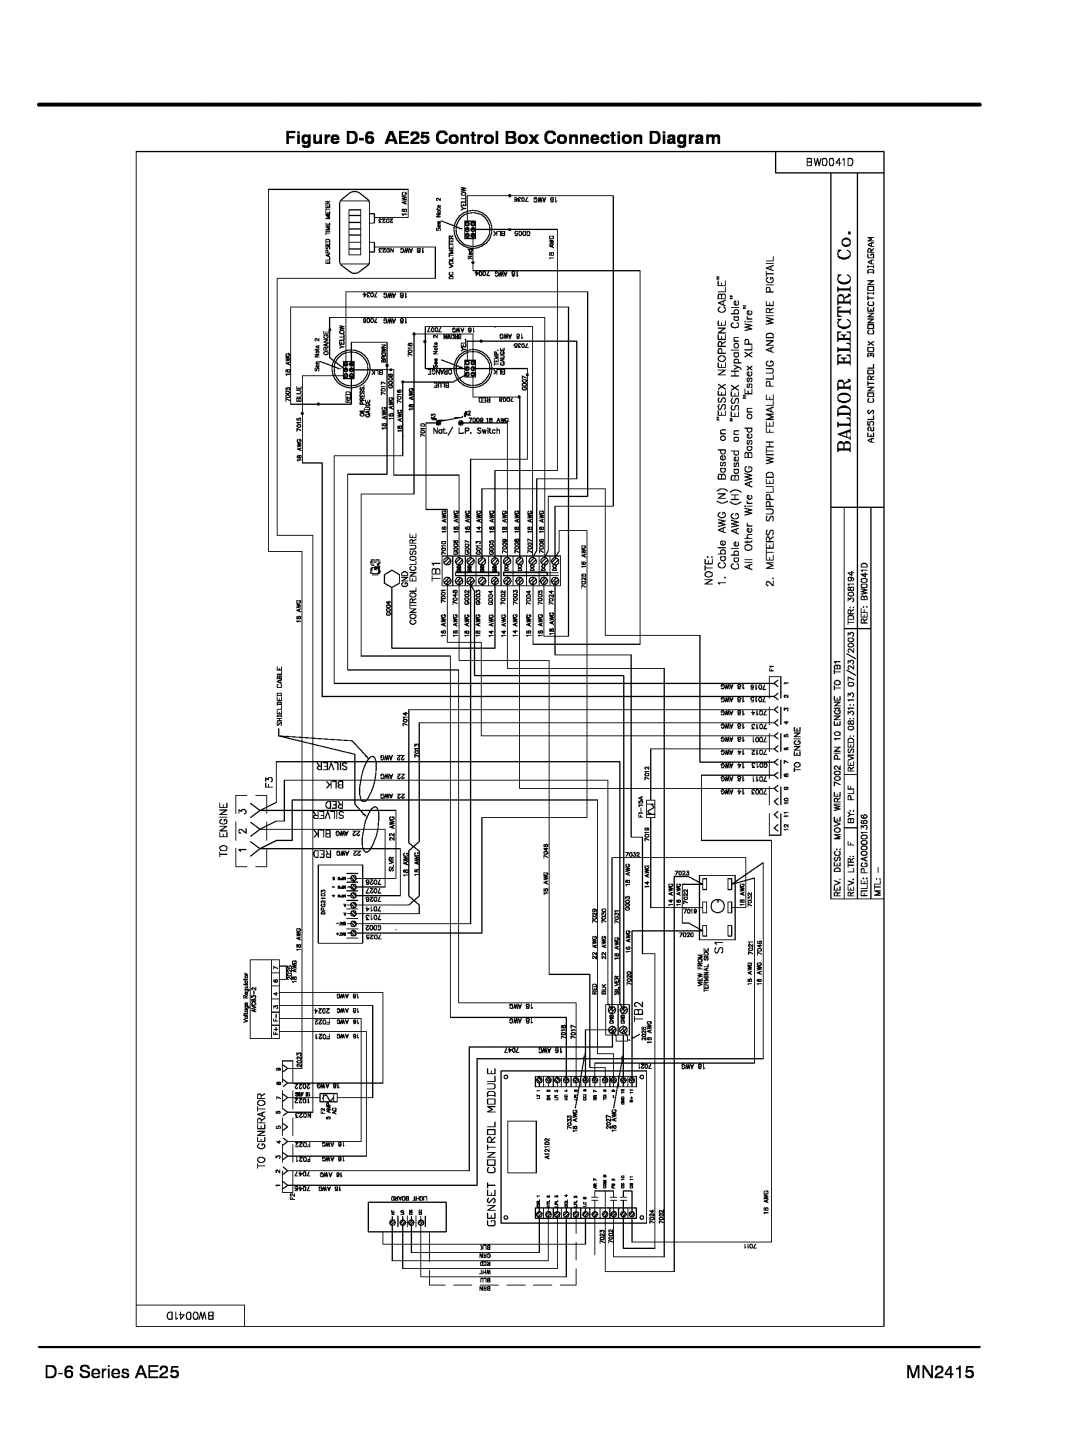 Baldor AE11, AE10, AE8 manual Figure D-6 AE25 Control Box Connection Diagram, D-6 Series AE25, MN2415 